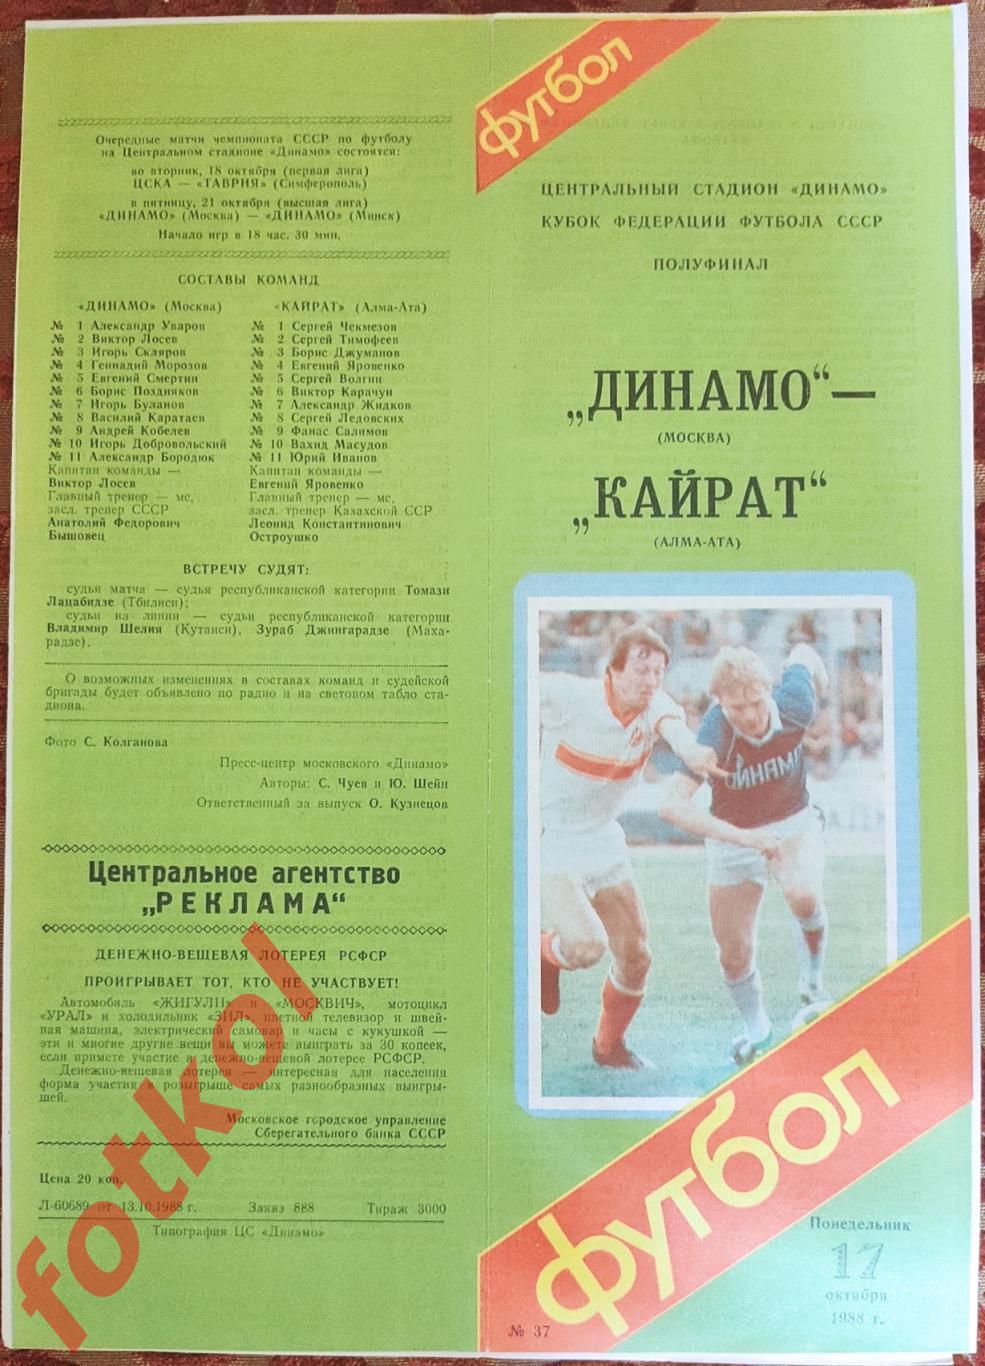 ДИНАМО Москва - КАЙРАТ Алма - Ата 17.10.1988 КУБОК Федерации Футбола